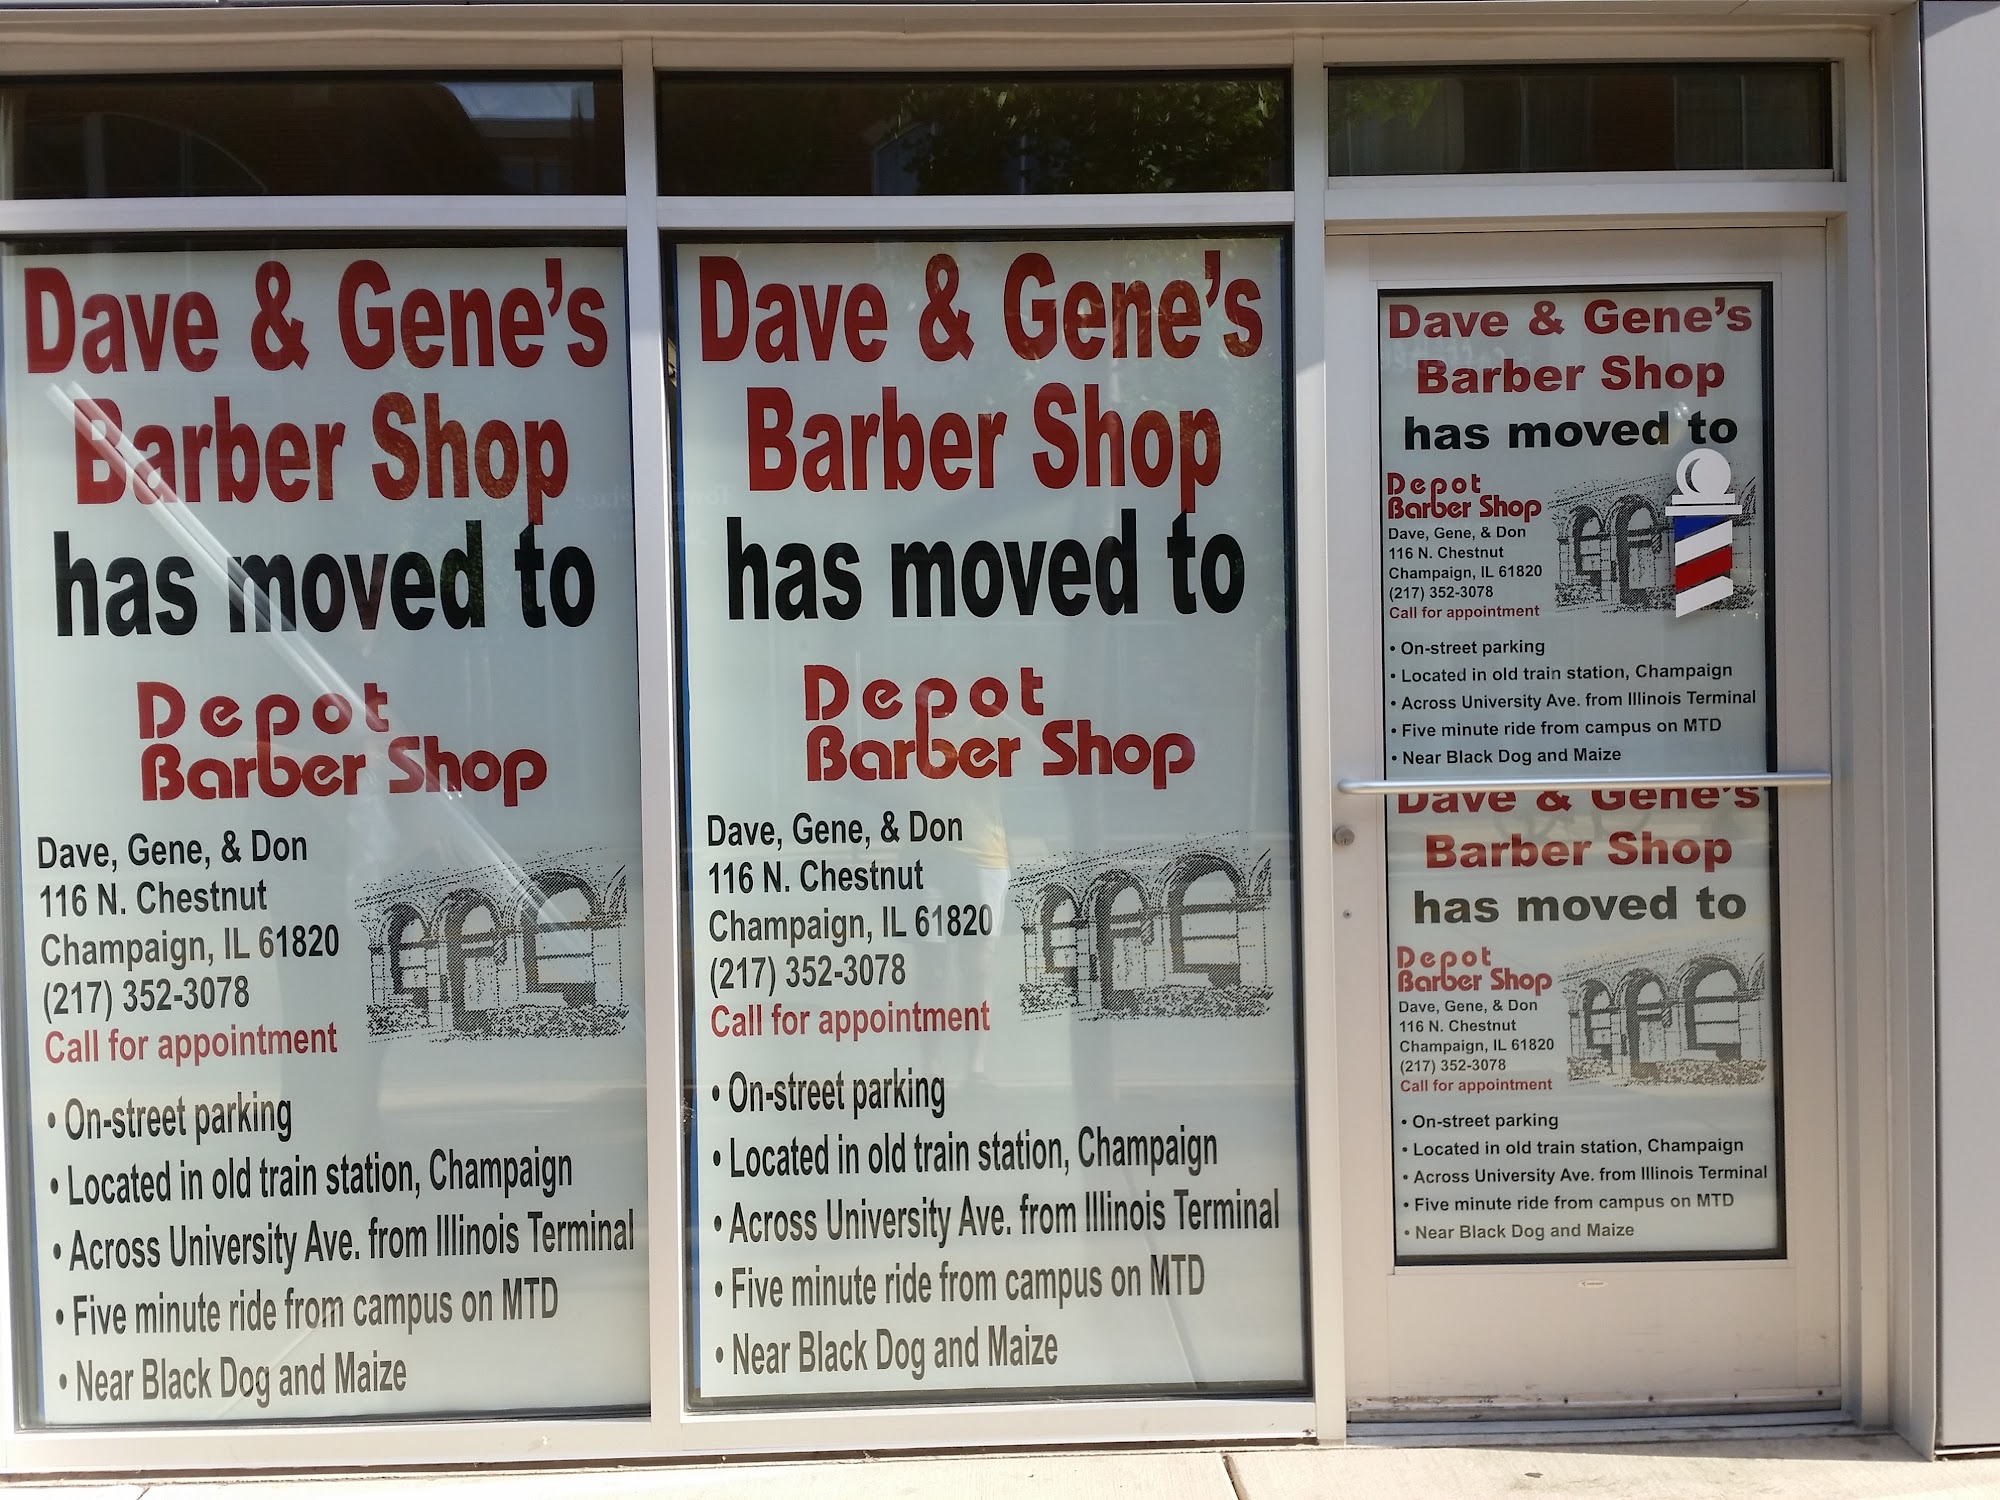 Dave & Gene's Barber Shop